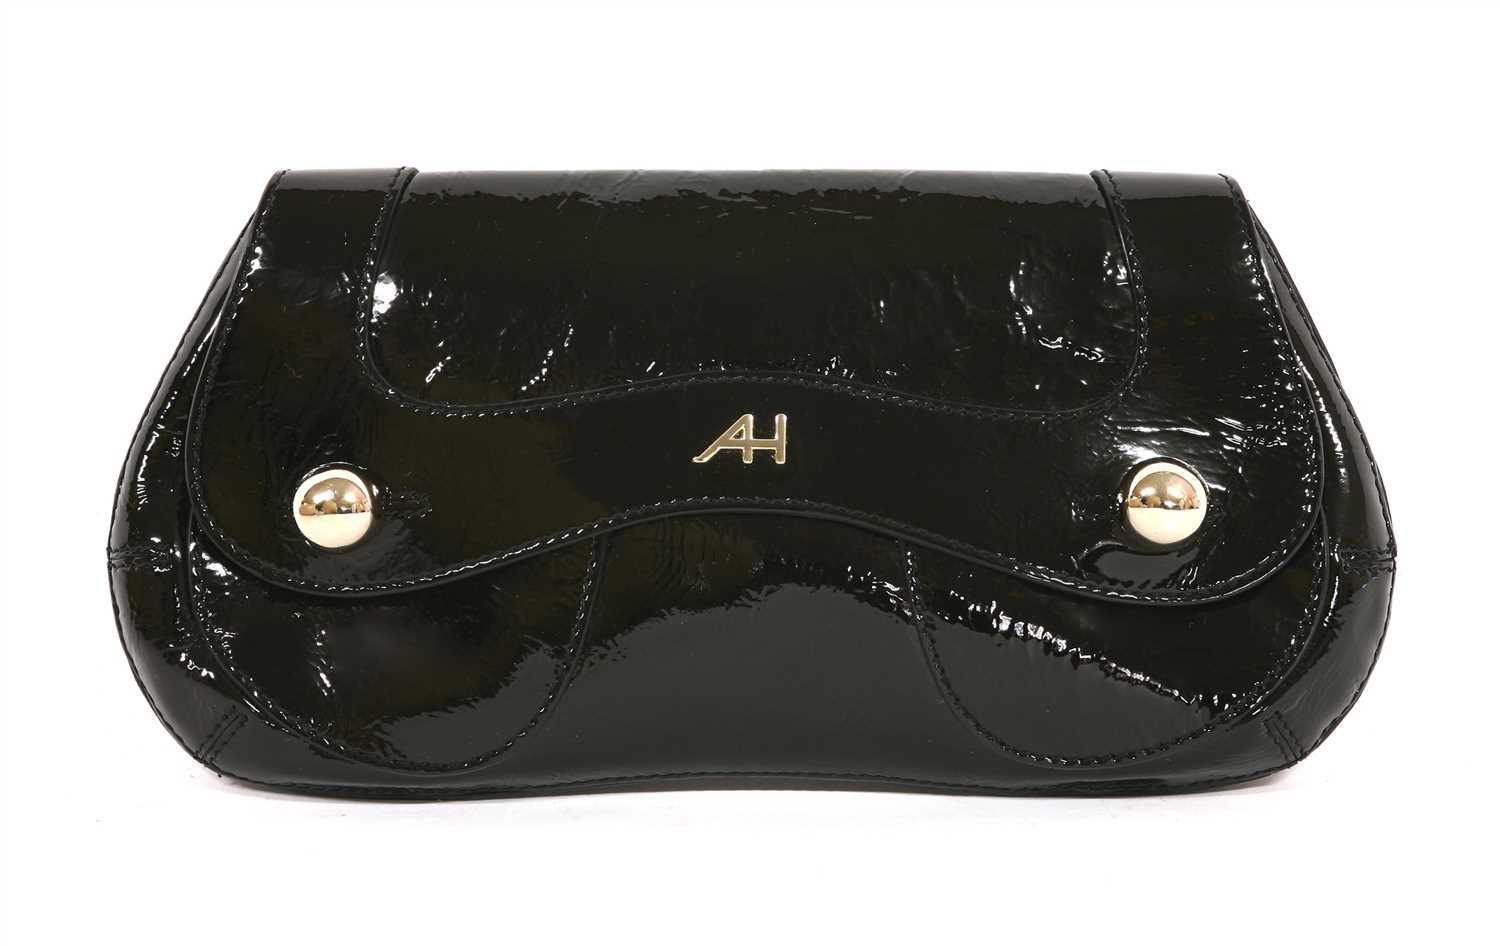 Lot 784 - An Anya Hindmarch black patent clutch handbag